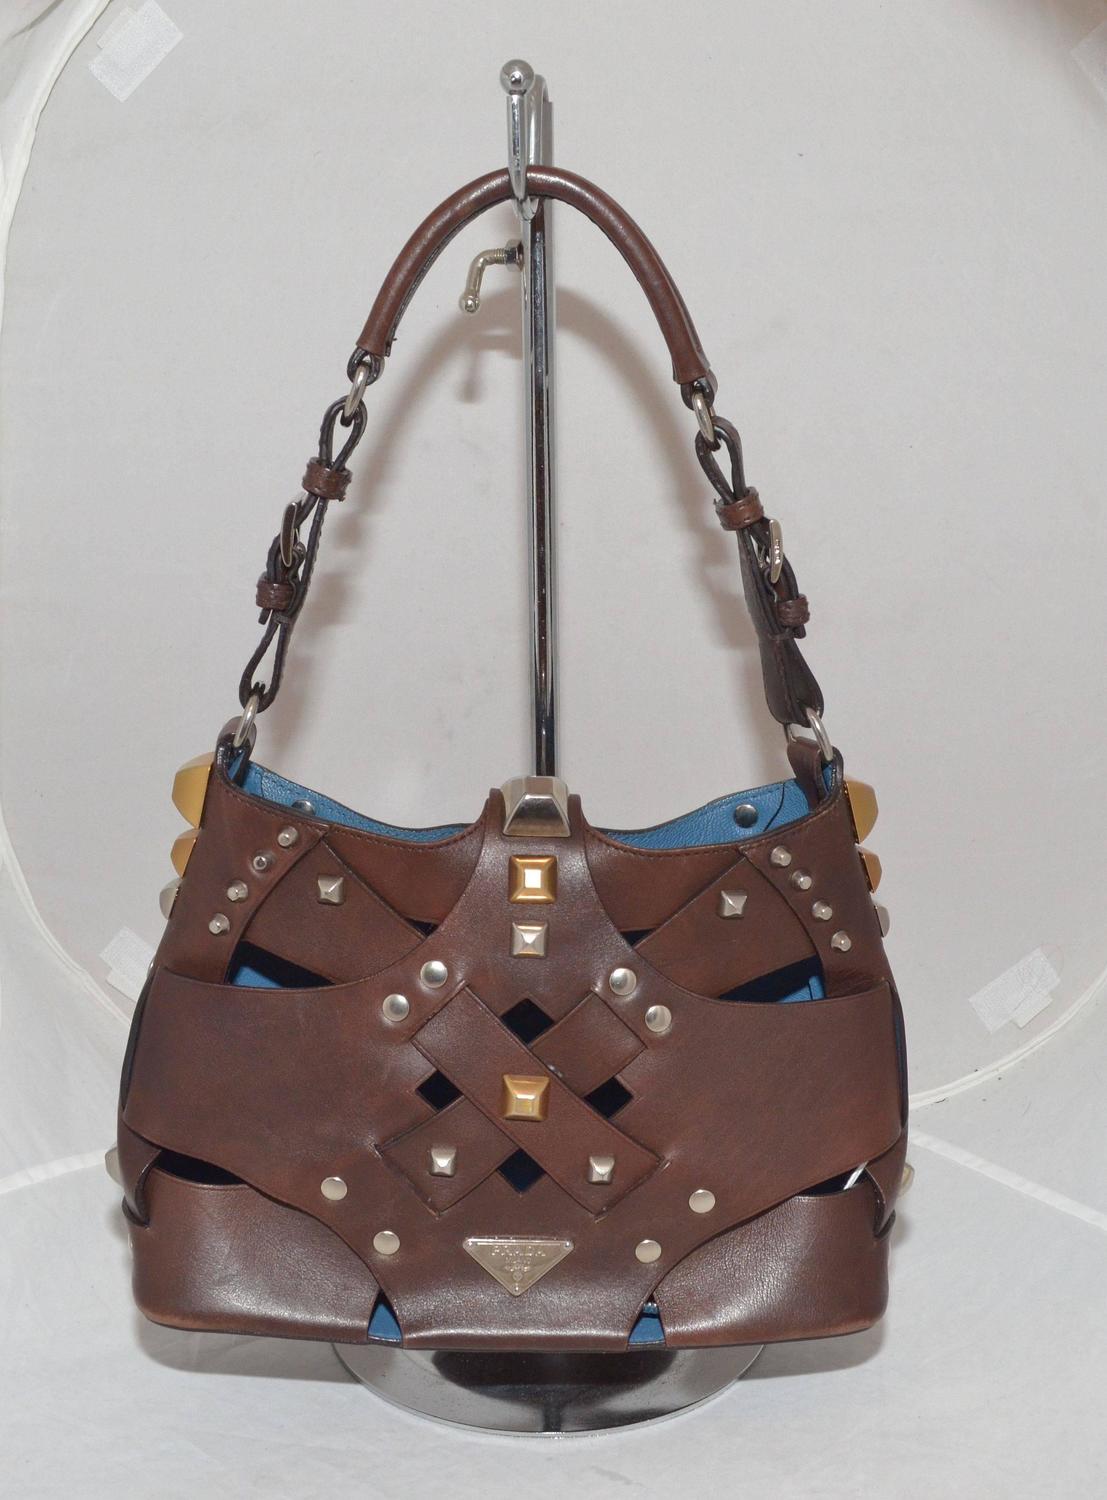 Prada Woven Leather Studded Cutout Mini Handbag For Sale at 1stdibs